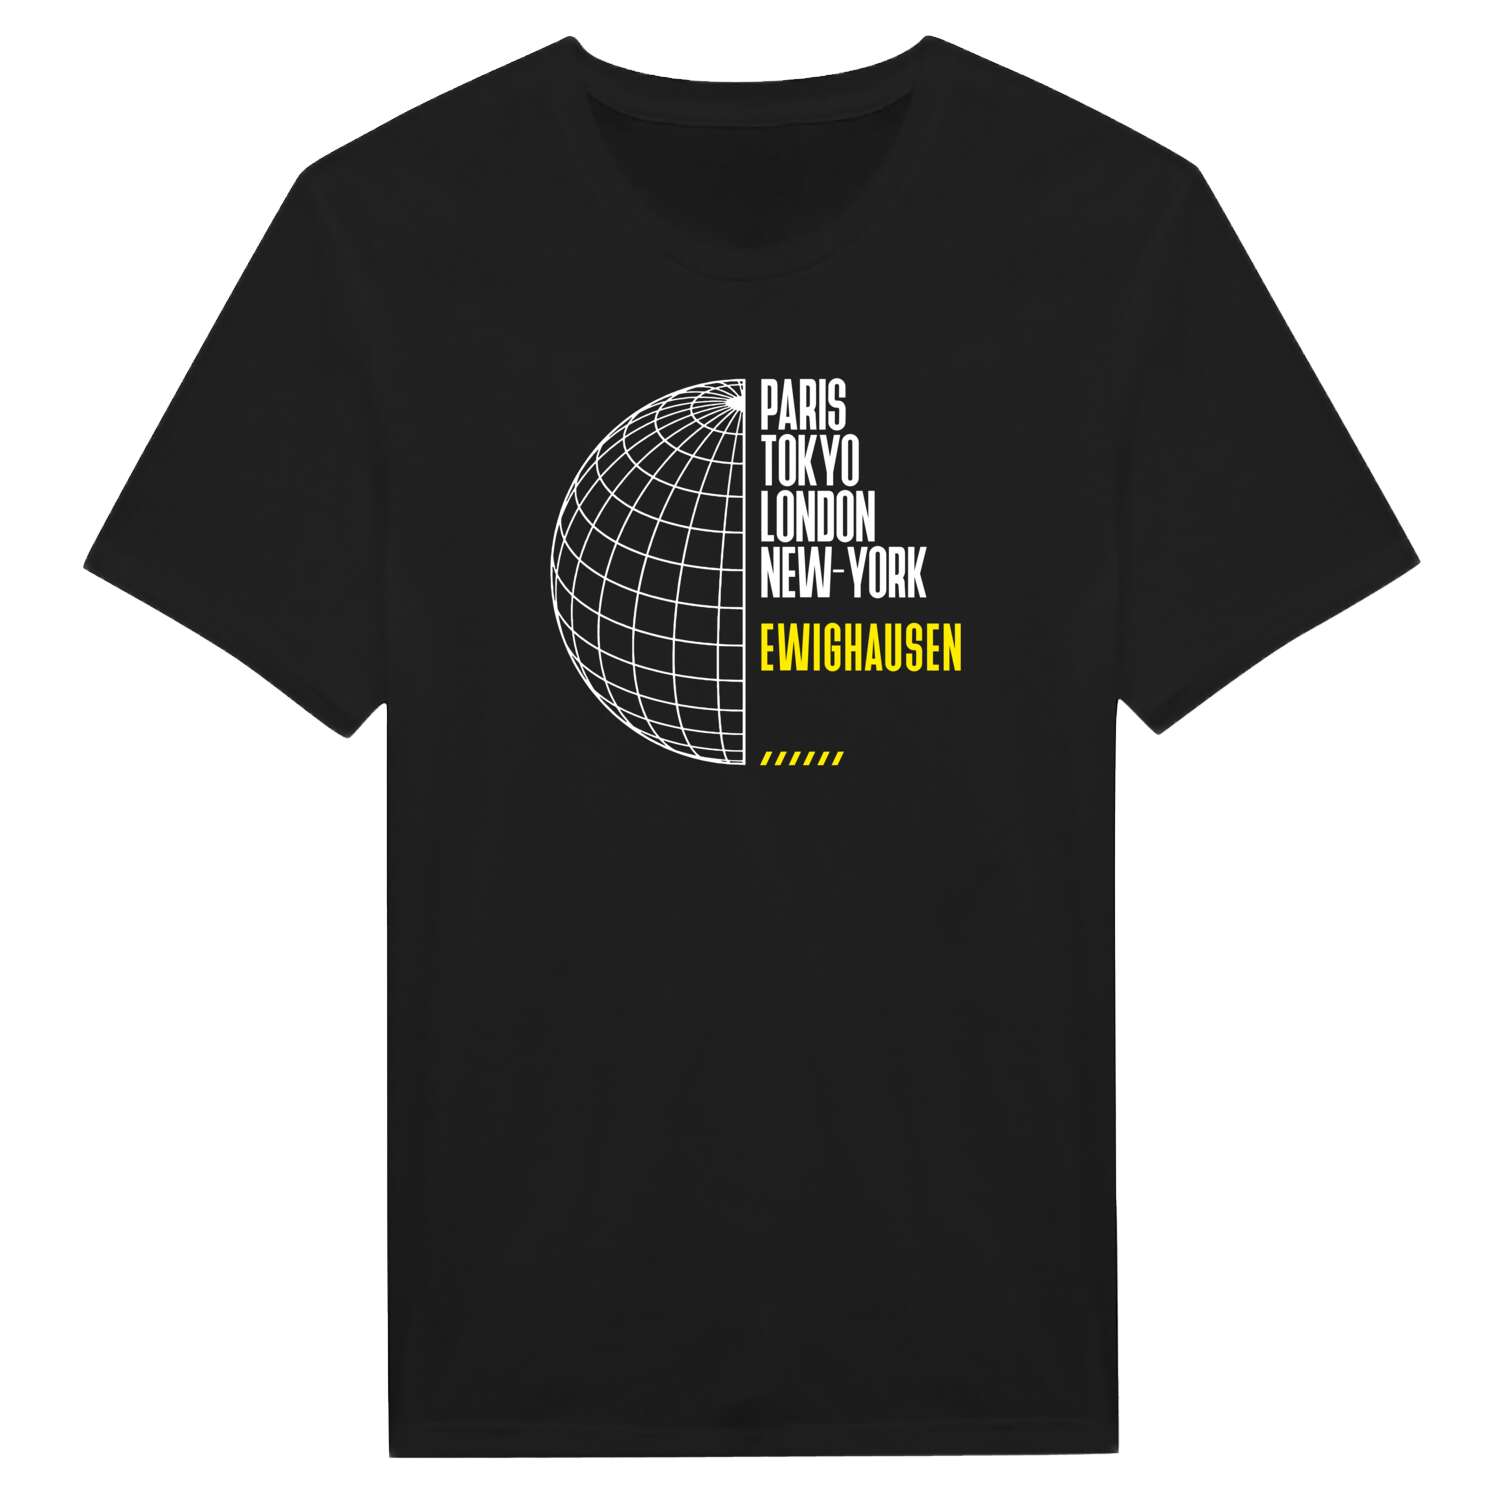 Ewighausen T-Shirt »Paris Tokyo London«